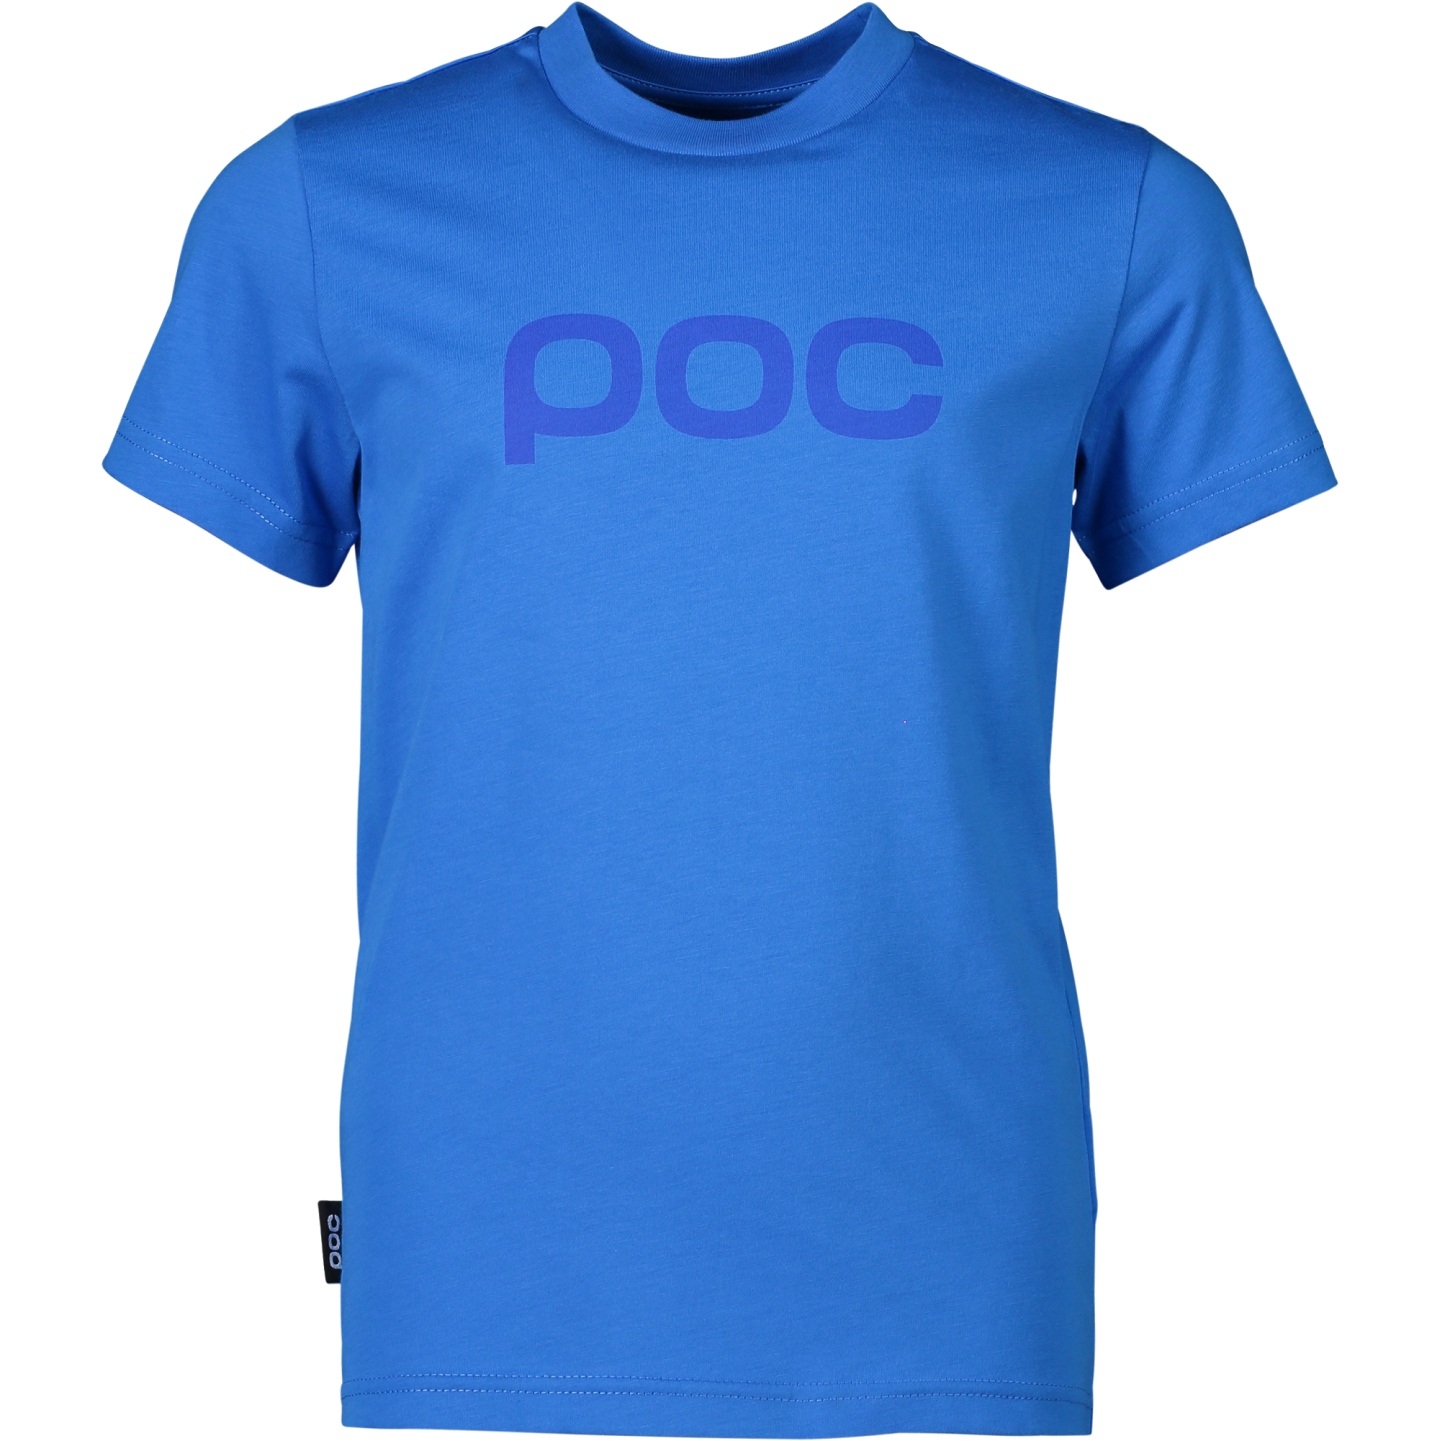 Produktbild von POC T-Shirt Kinder - 1651 Natrium Blue